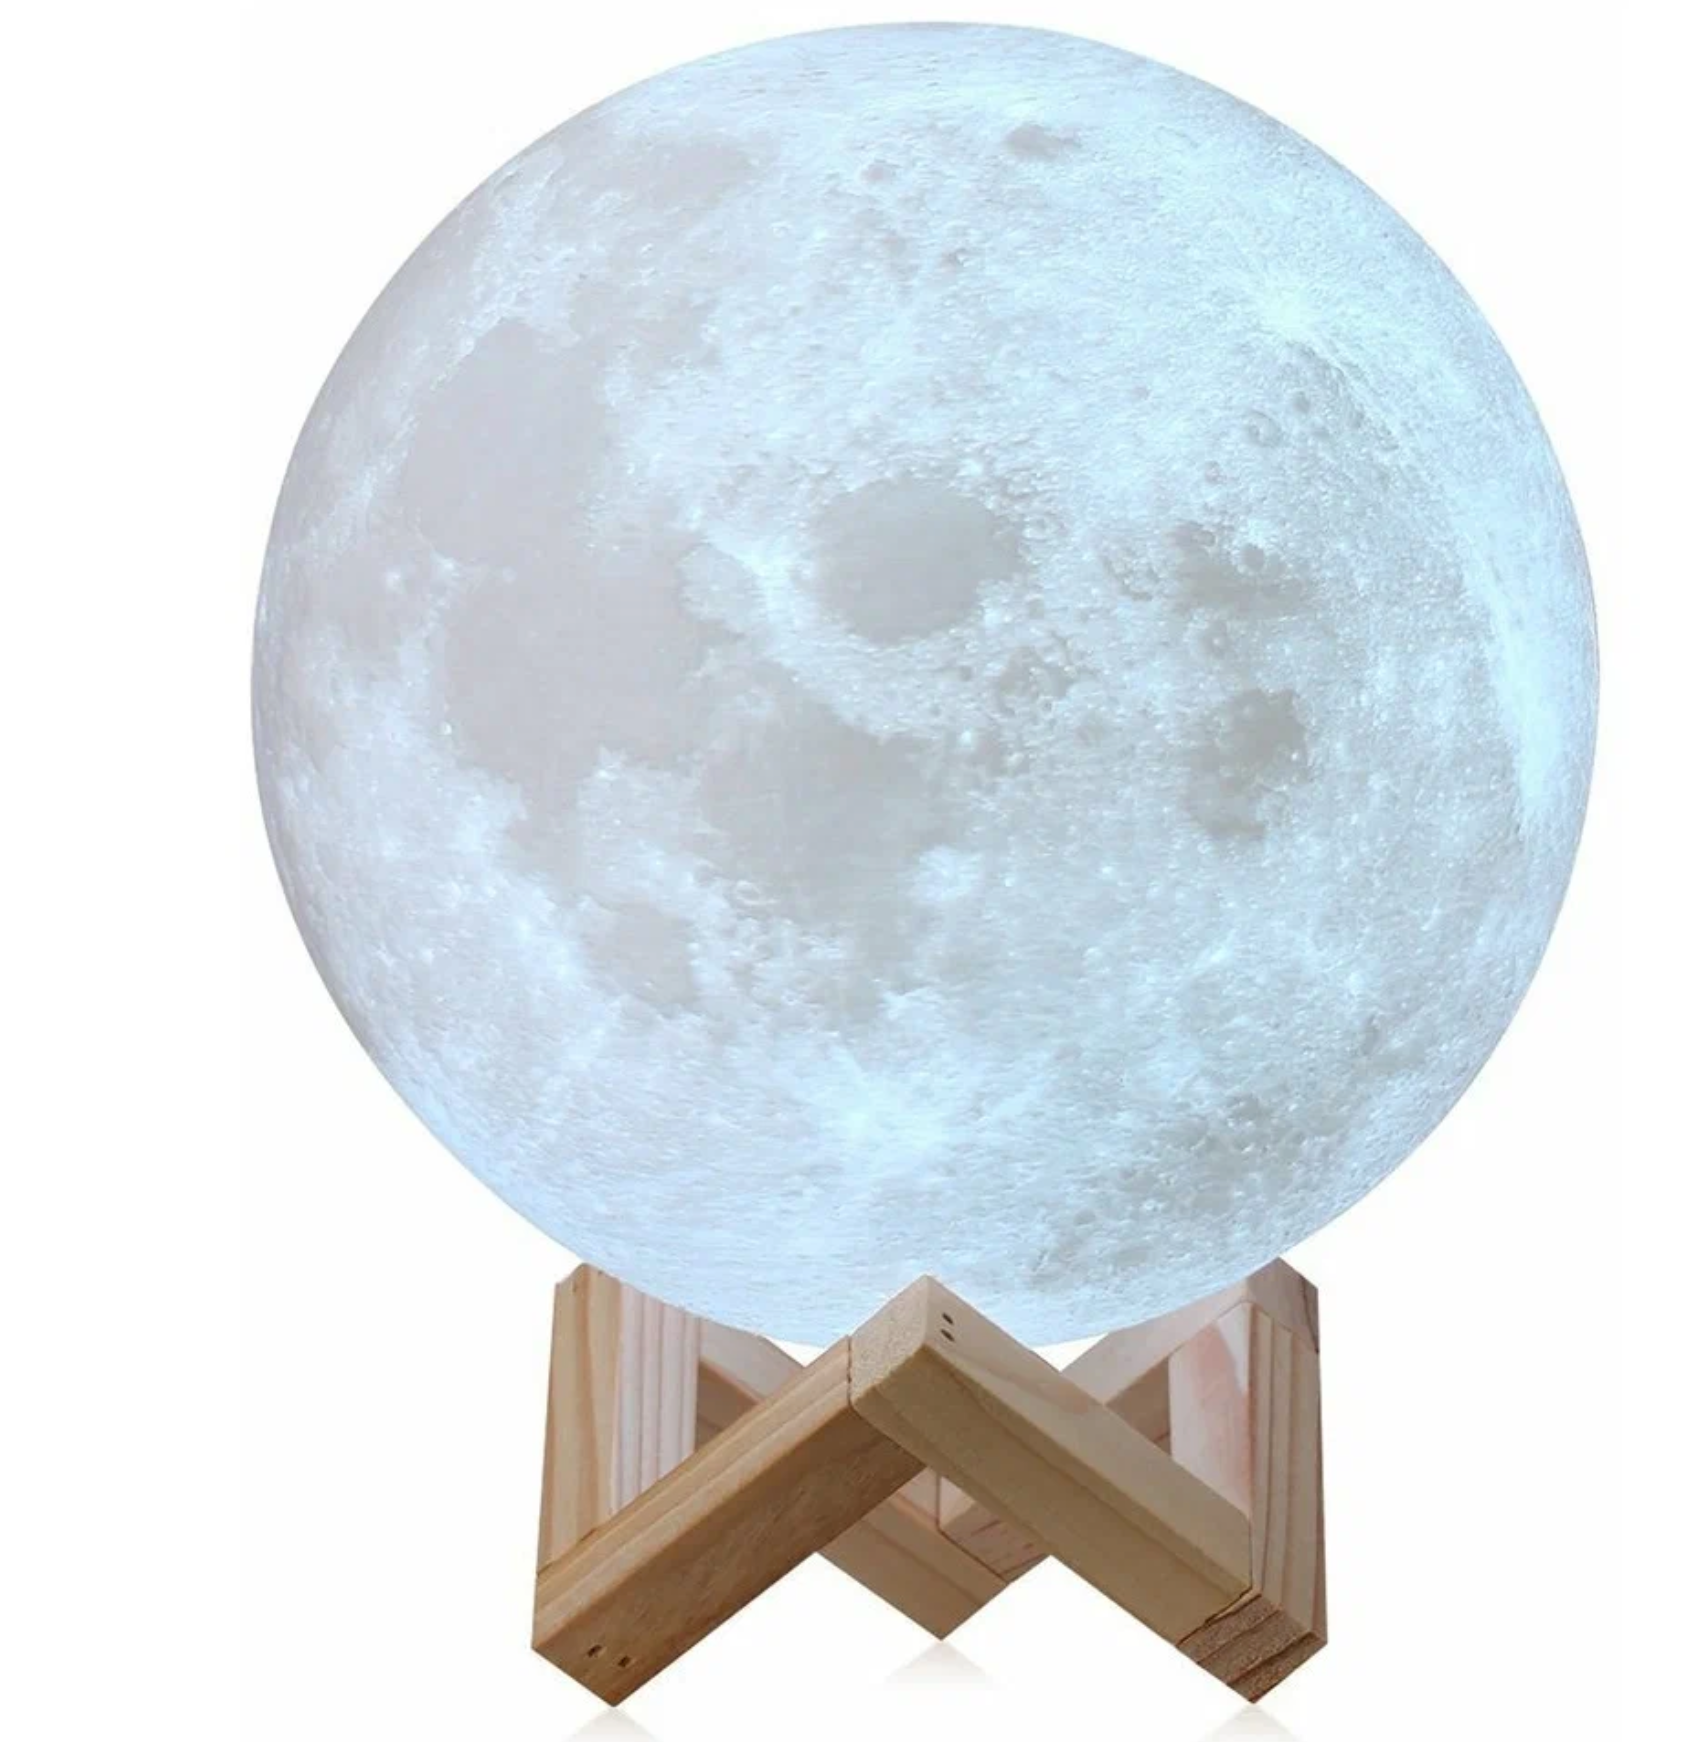 Ночной светильник-шар Луна с пультом управления на деревянной подставке. 15 см. Беспроводной ночной светильник, светильник Ночник-светильник с сенсорным управлением6 цветов освещения